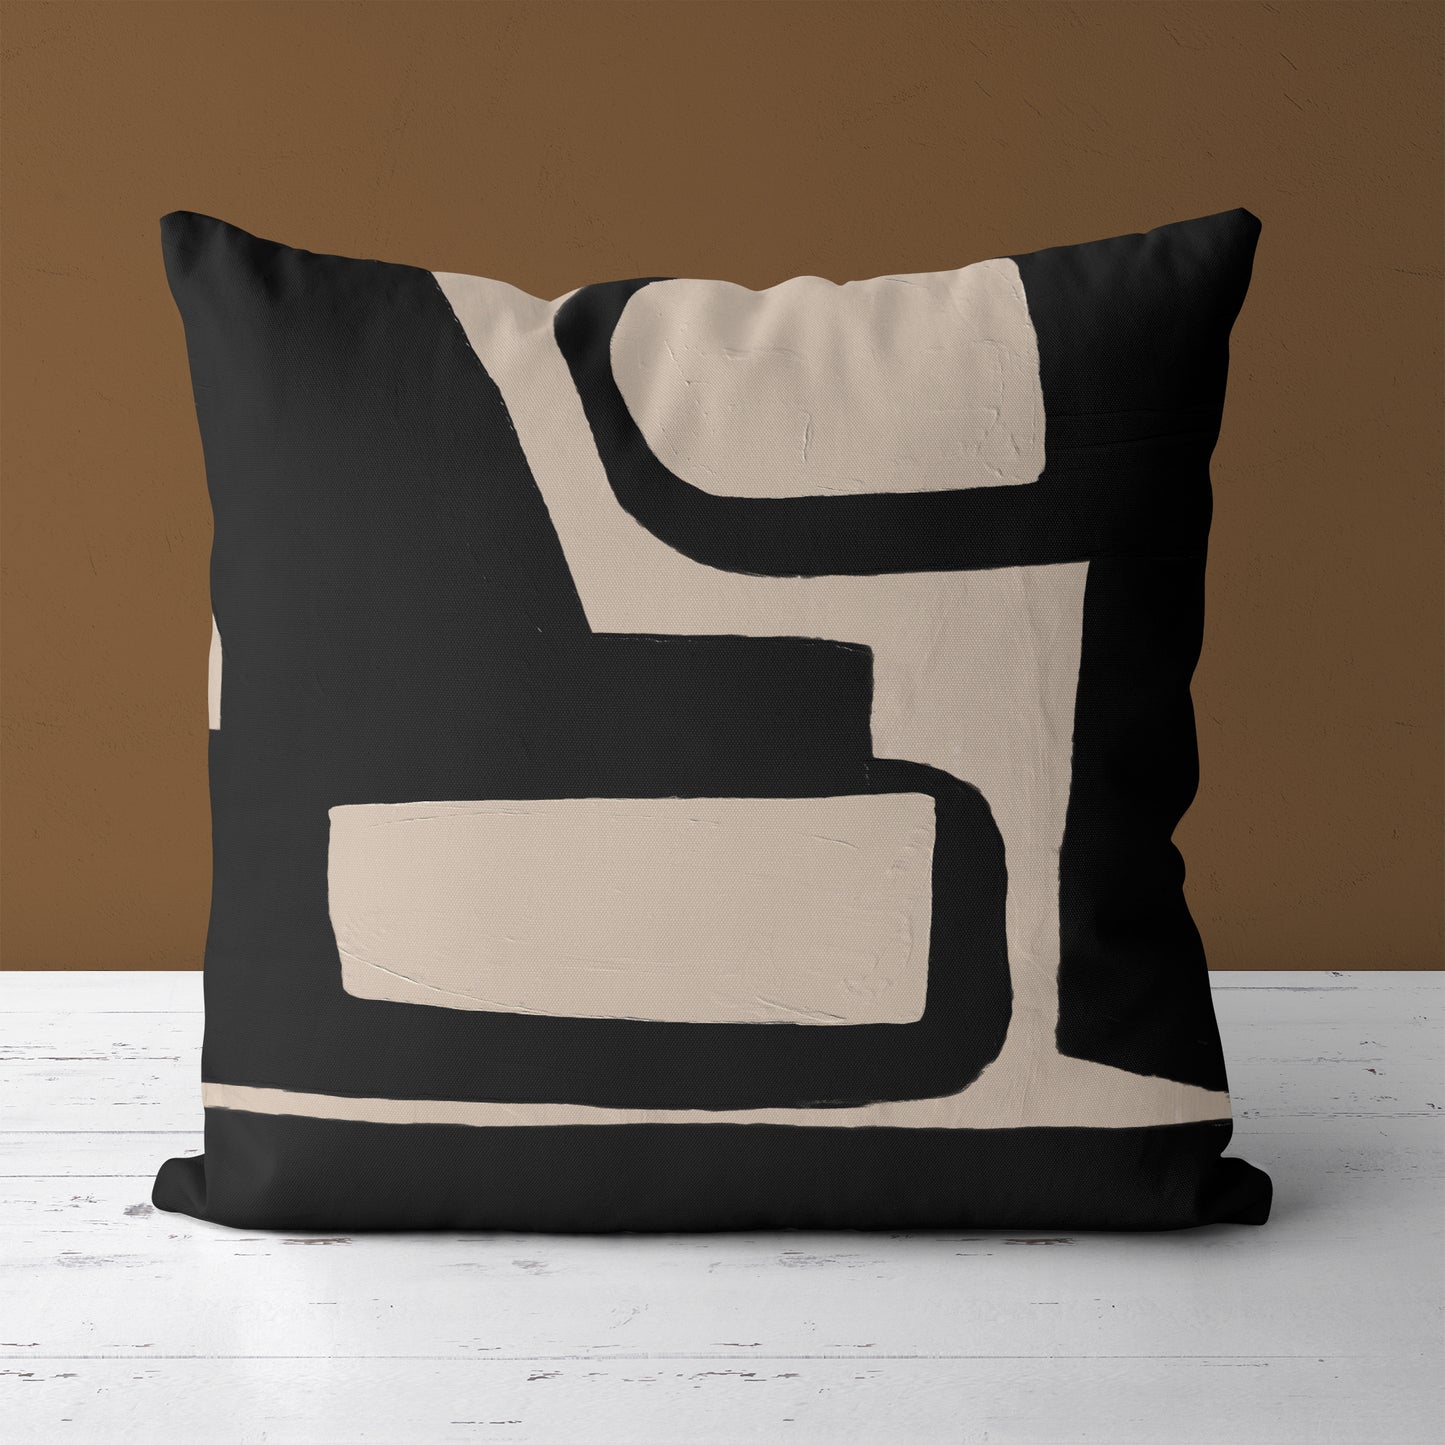 Black Bauhaus Modern Art Throw Pillow